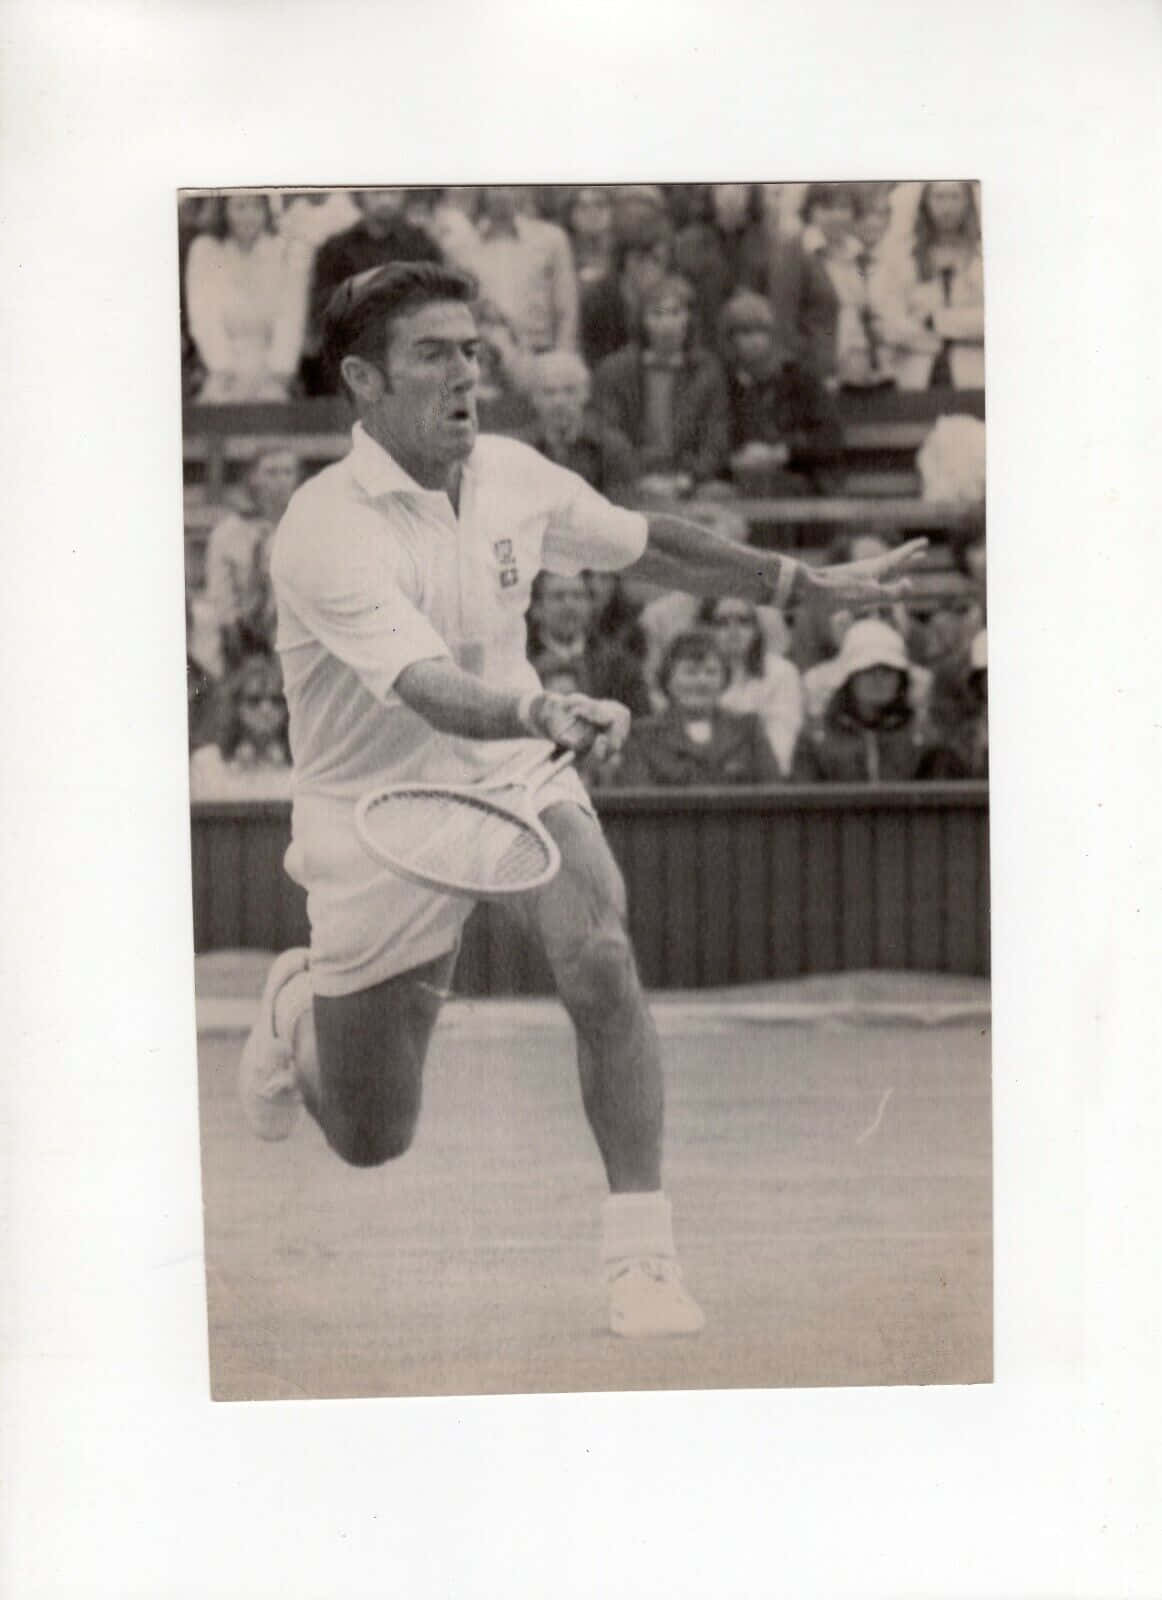 Legendary Tennis Player Ken Rosewall in Action Wallpaper